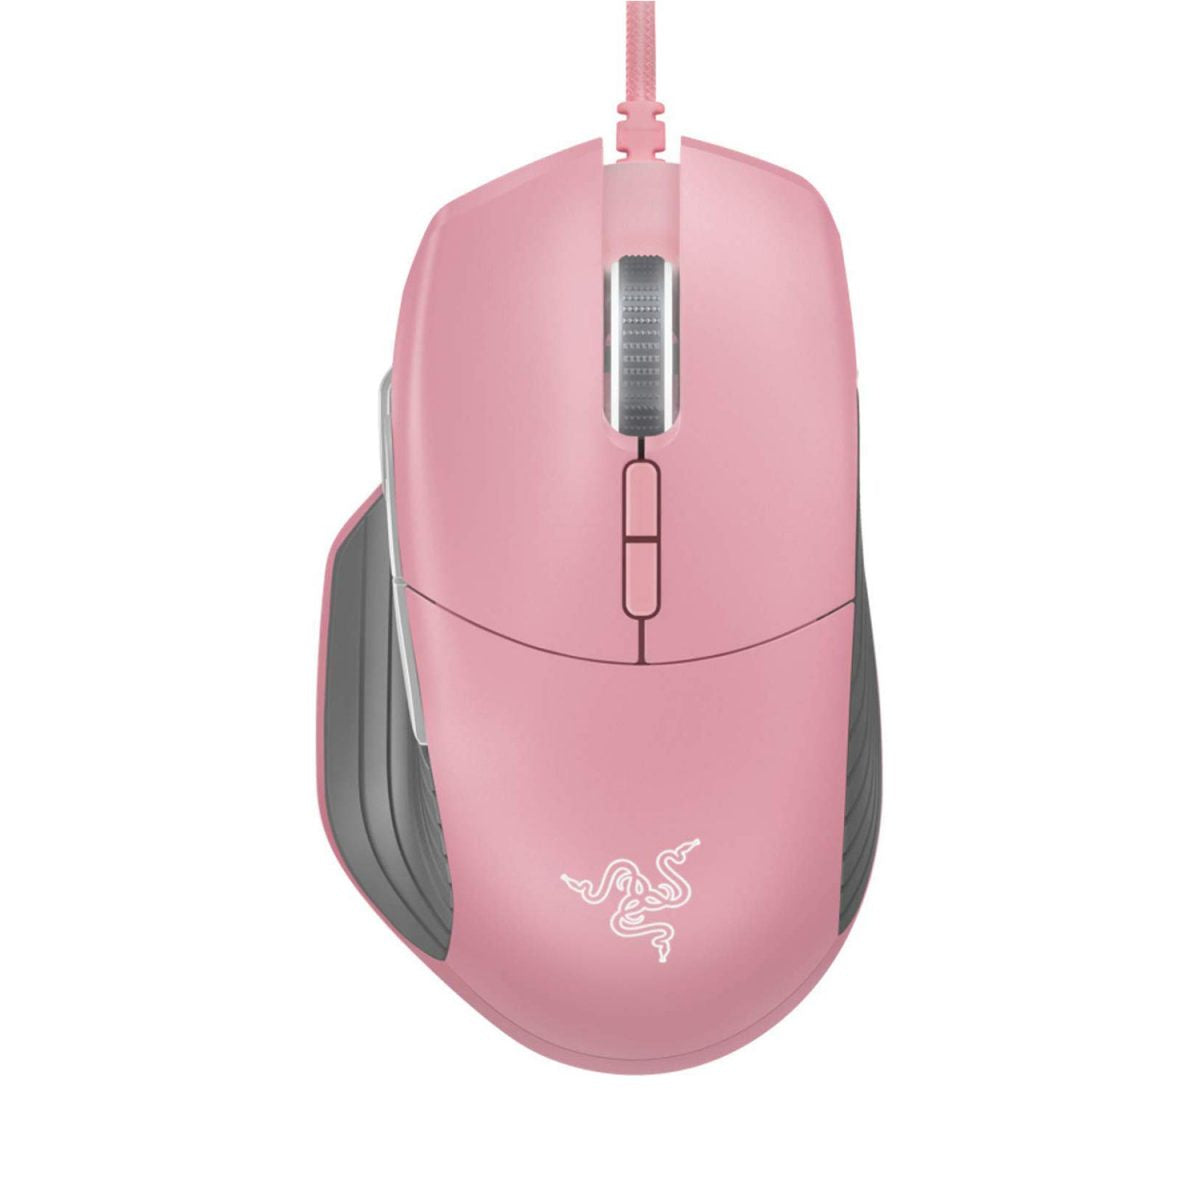 Razer - Basilisk Gaming Mouse - Quartz Pink